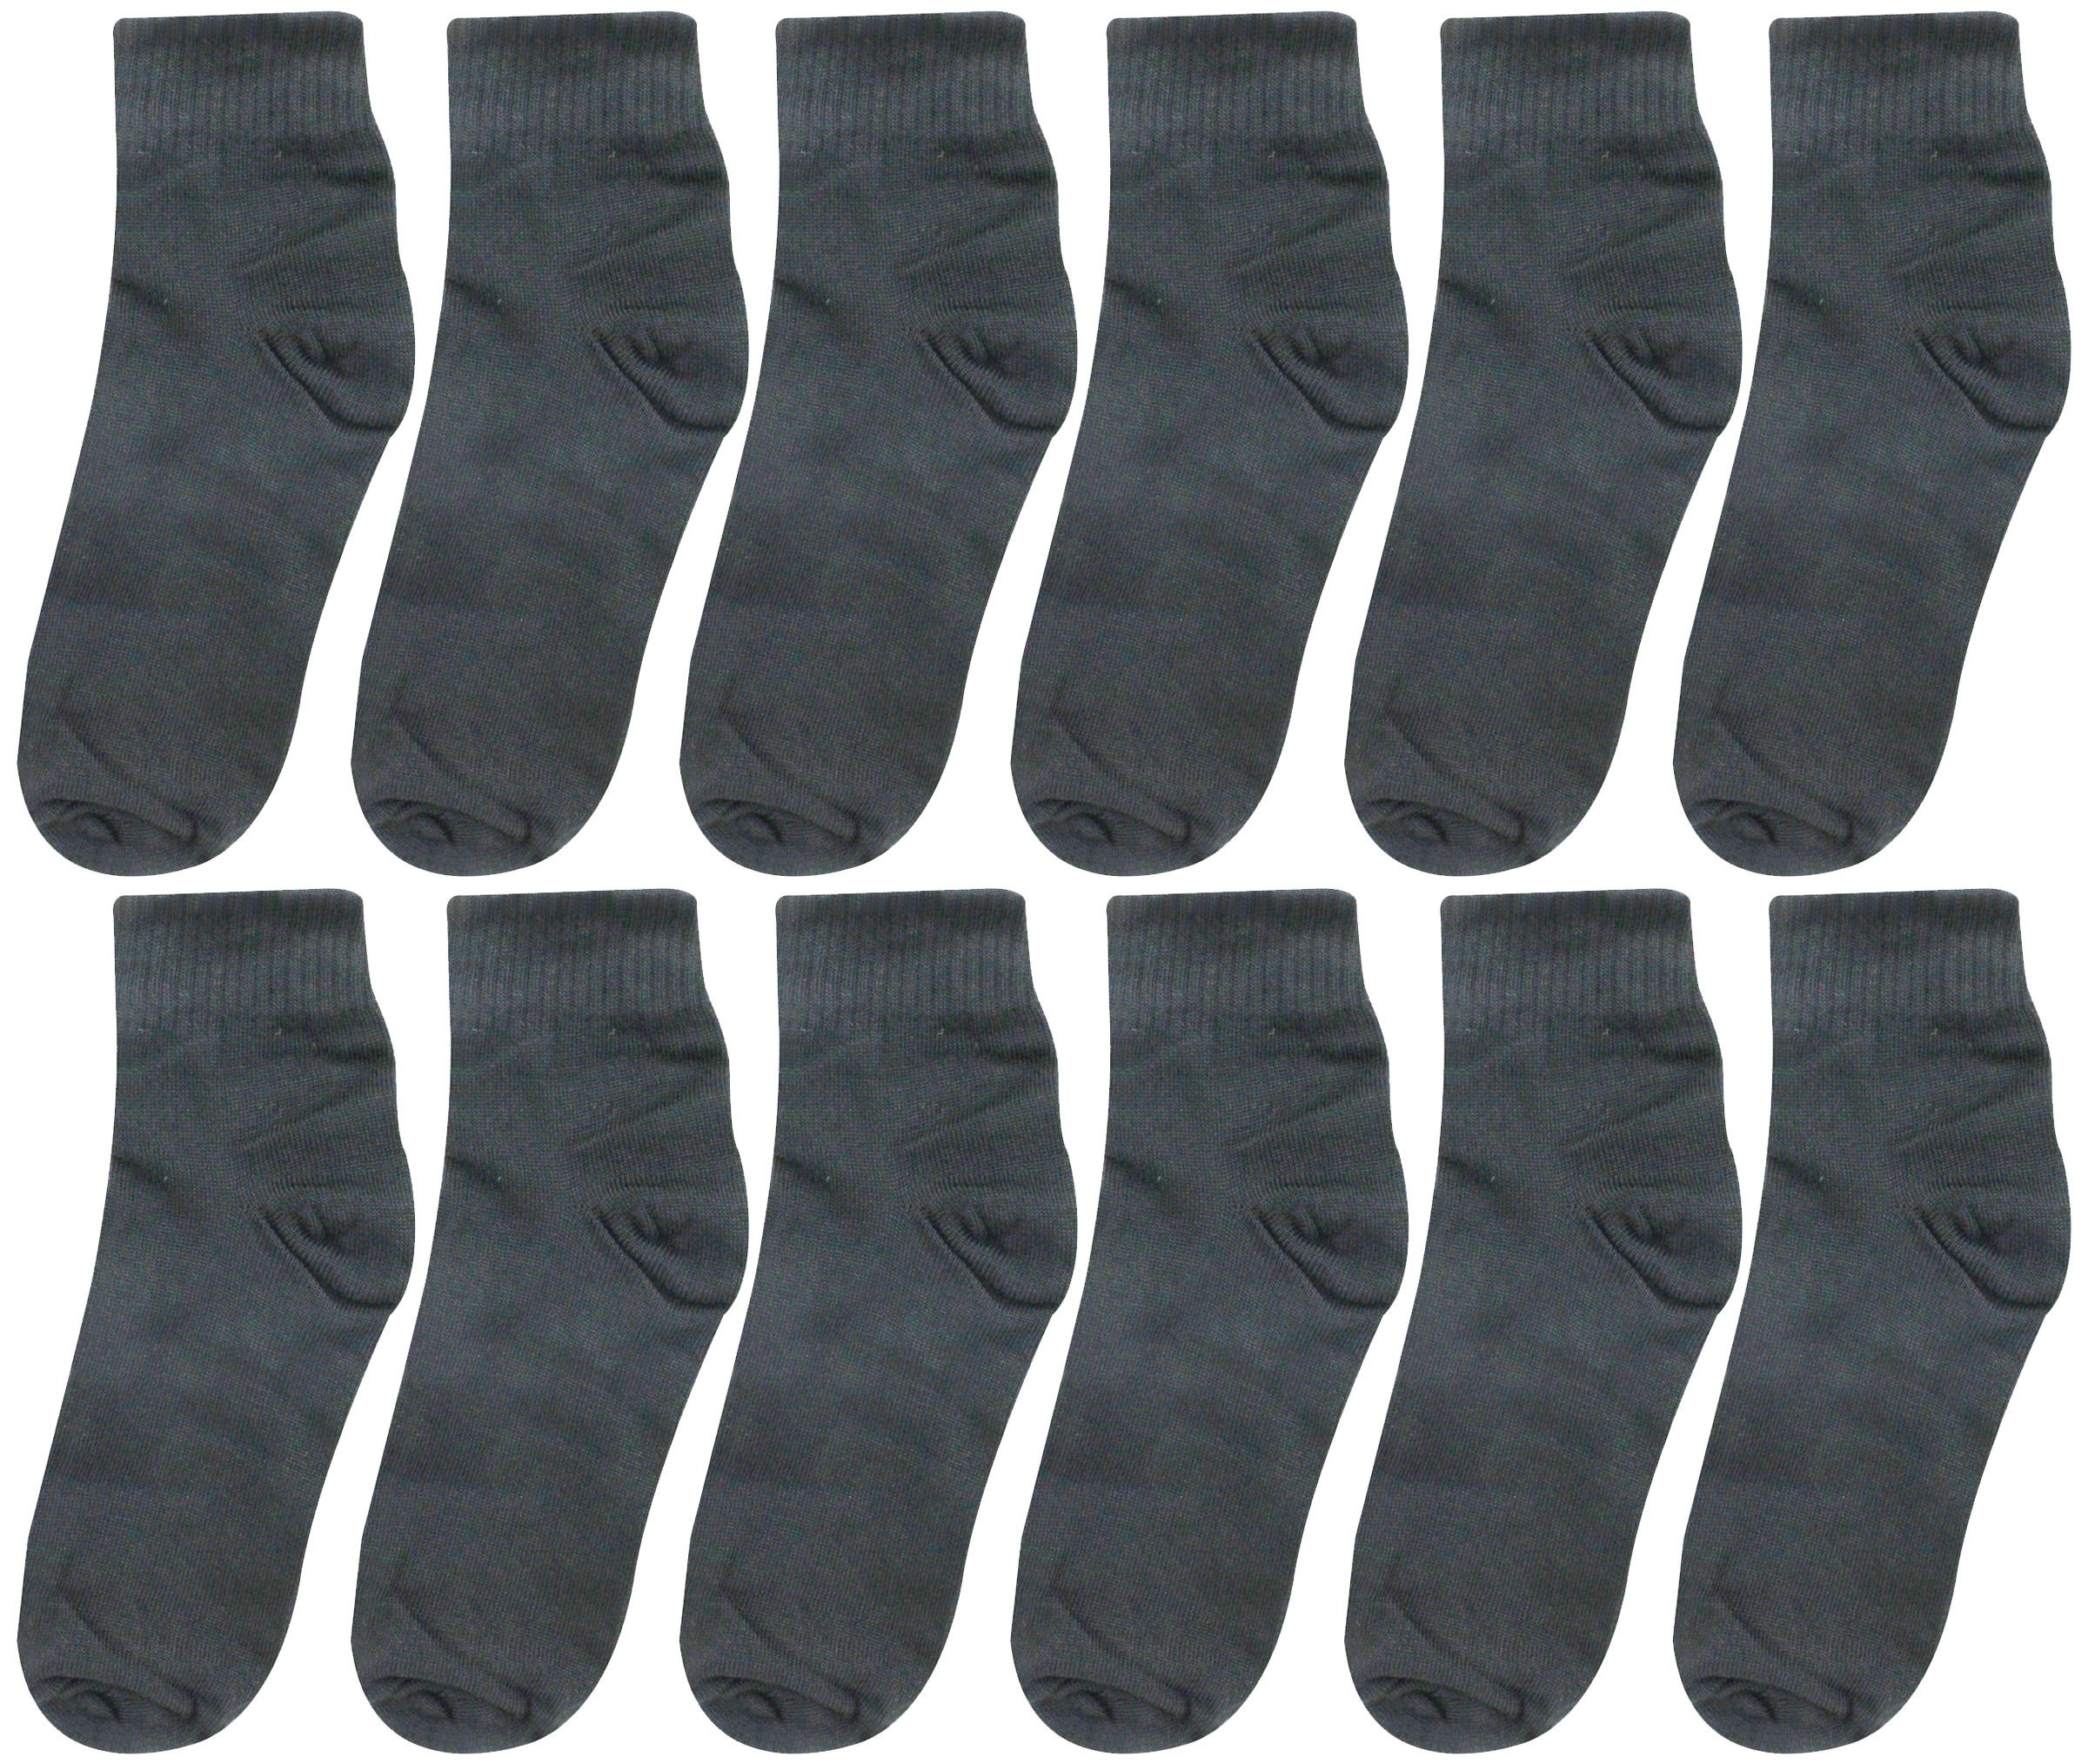 Neska Moda Men Cotton Black 12 Pair Ankle Length Socks